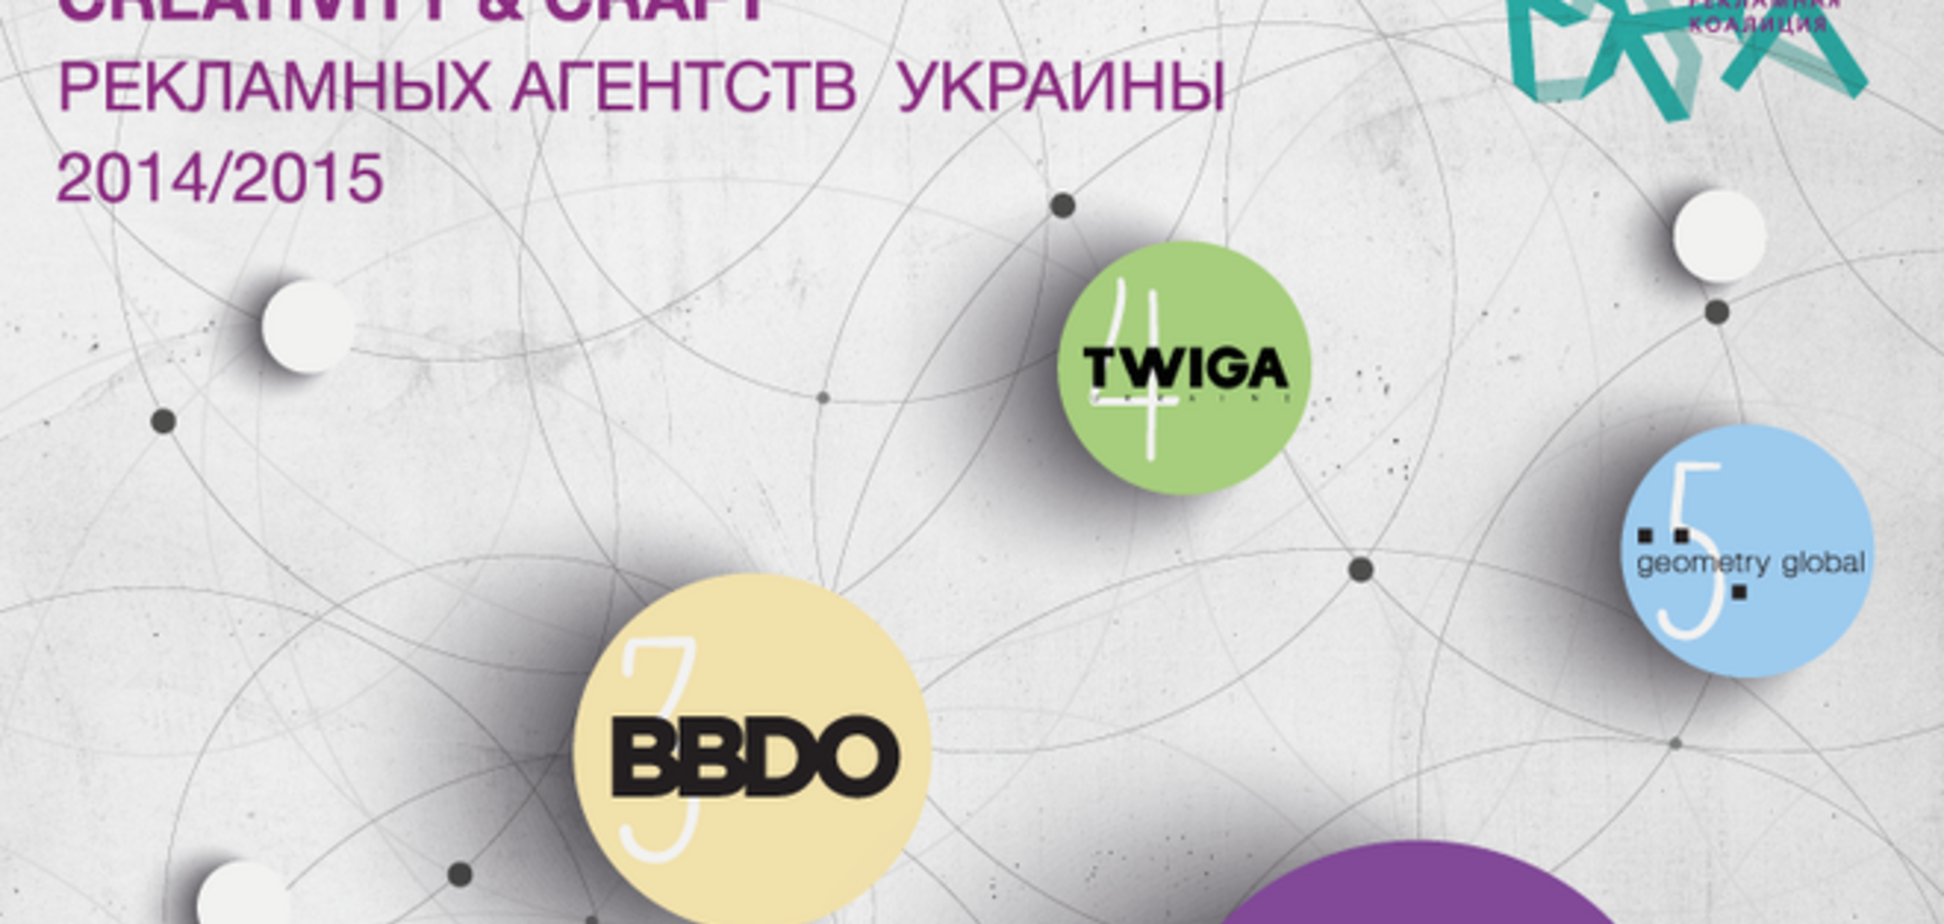 Рейтинги креативности и мастерства агентств Украины сезона 2014/2015